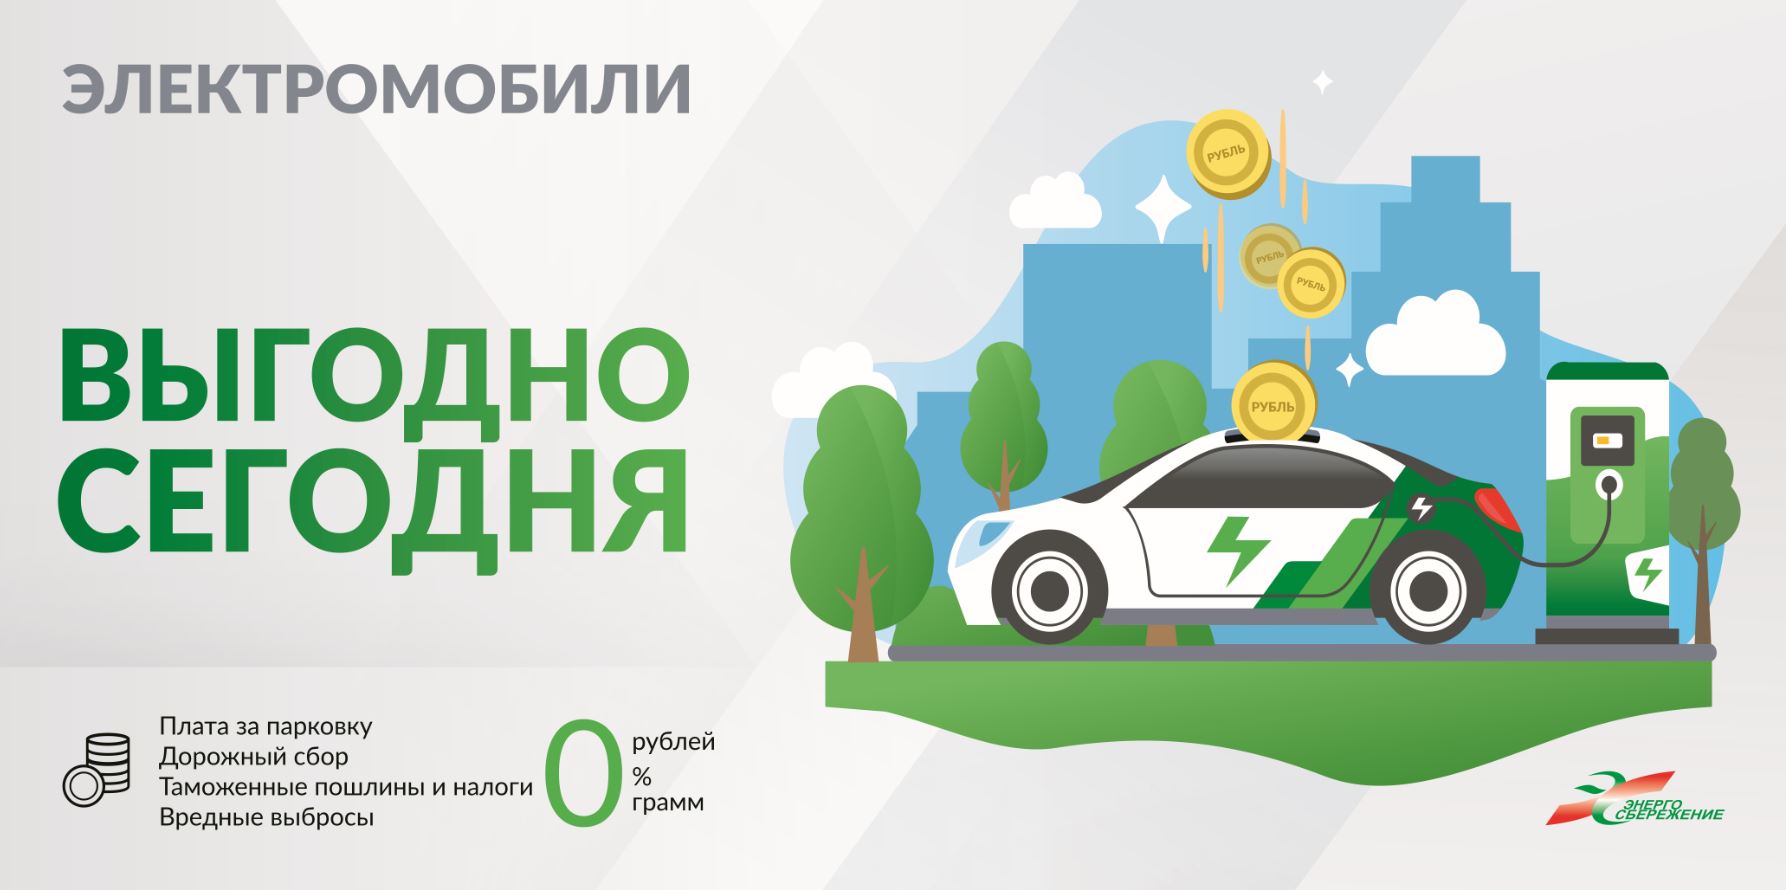 Подробнее о статье Беларусь: налоги и таможенные пошлины на электромобиль